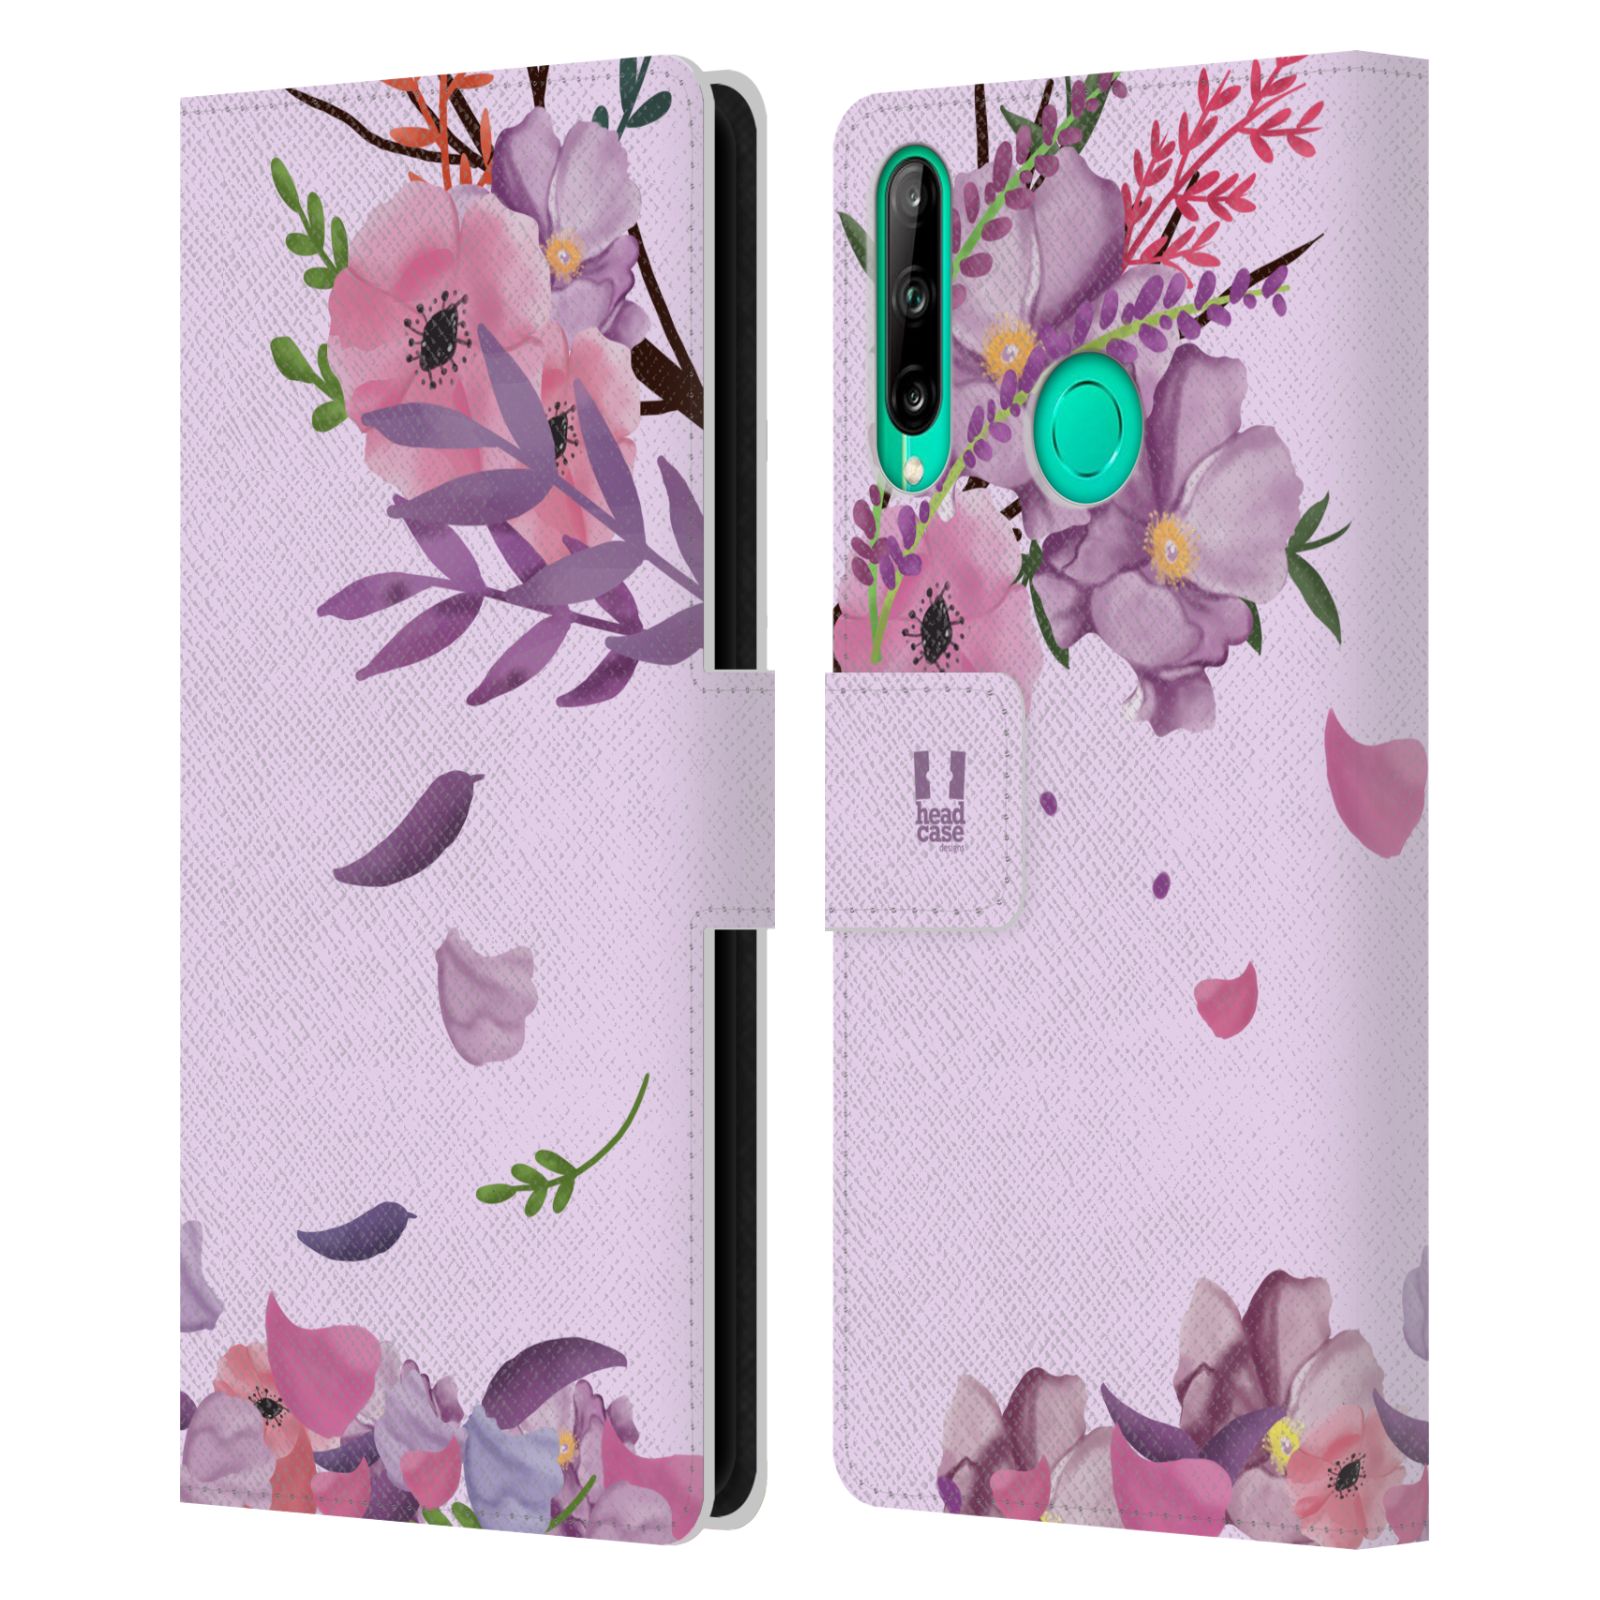 Pouzdro na mobil Huawei P40 LITE E - HEAD CASE - Rozkvetlé růže a listy růžová